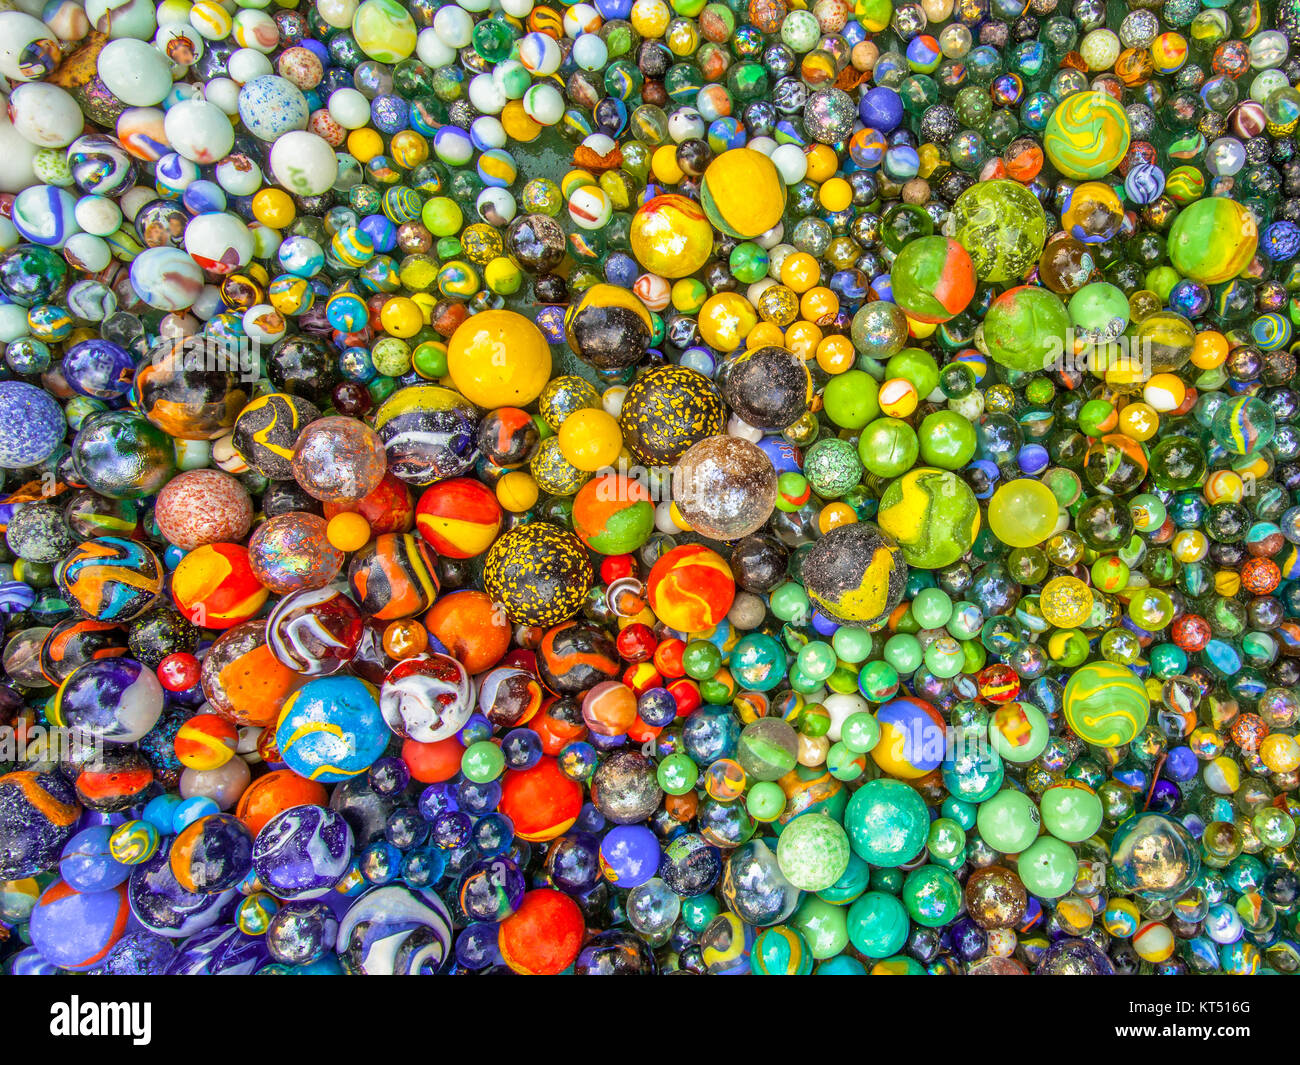 Hintergrund der bunte Glasmurmeln in verschiedenen Größen in einer Farbe Muster wie methaphor für multikulturelle Gemeinschaft zusammenleben Stockfoto